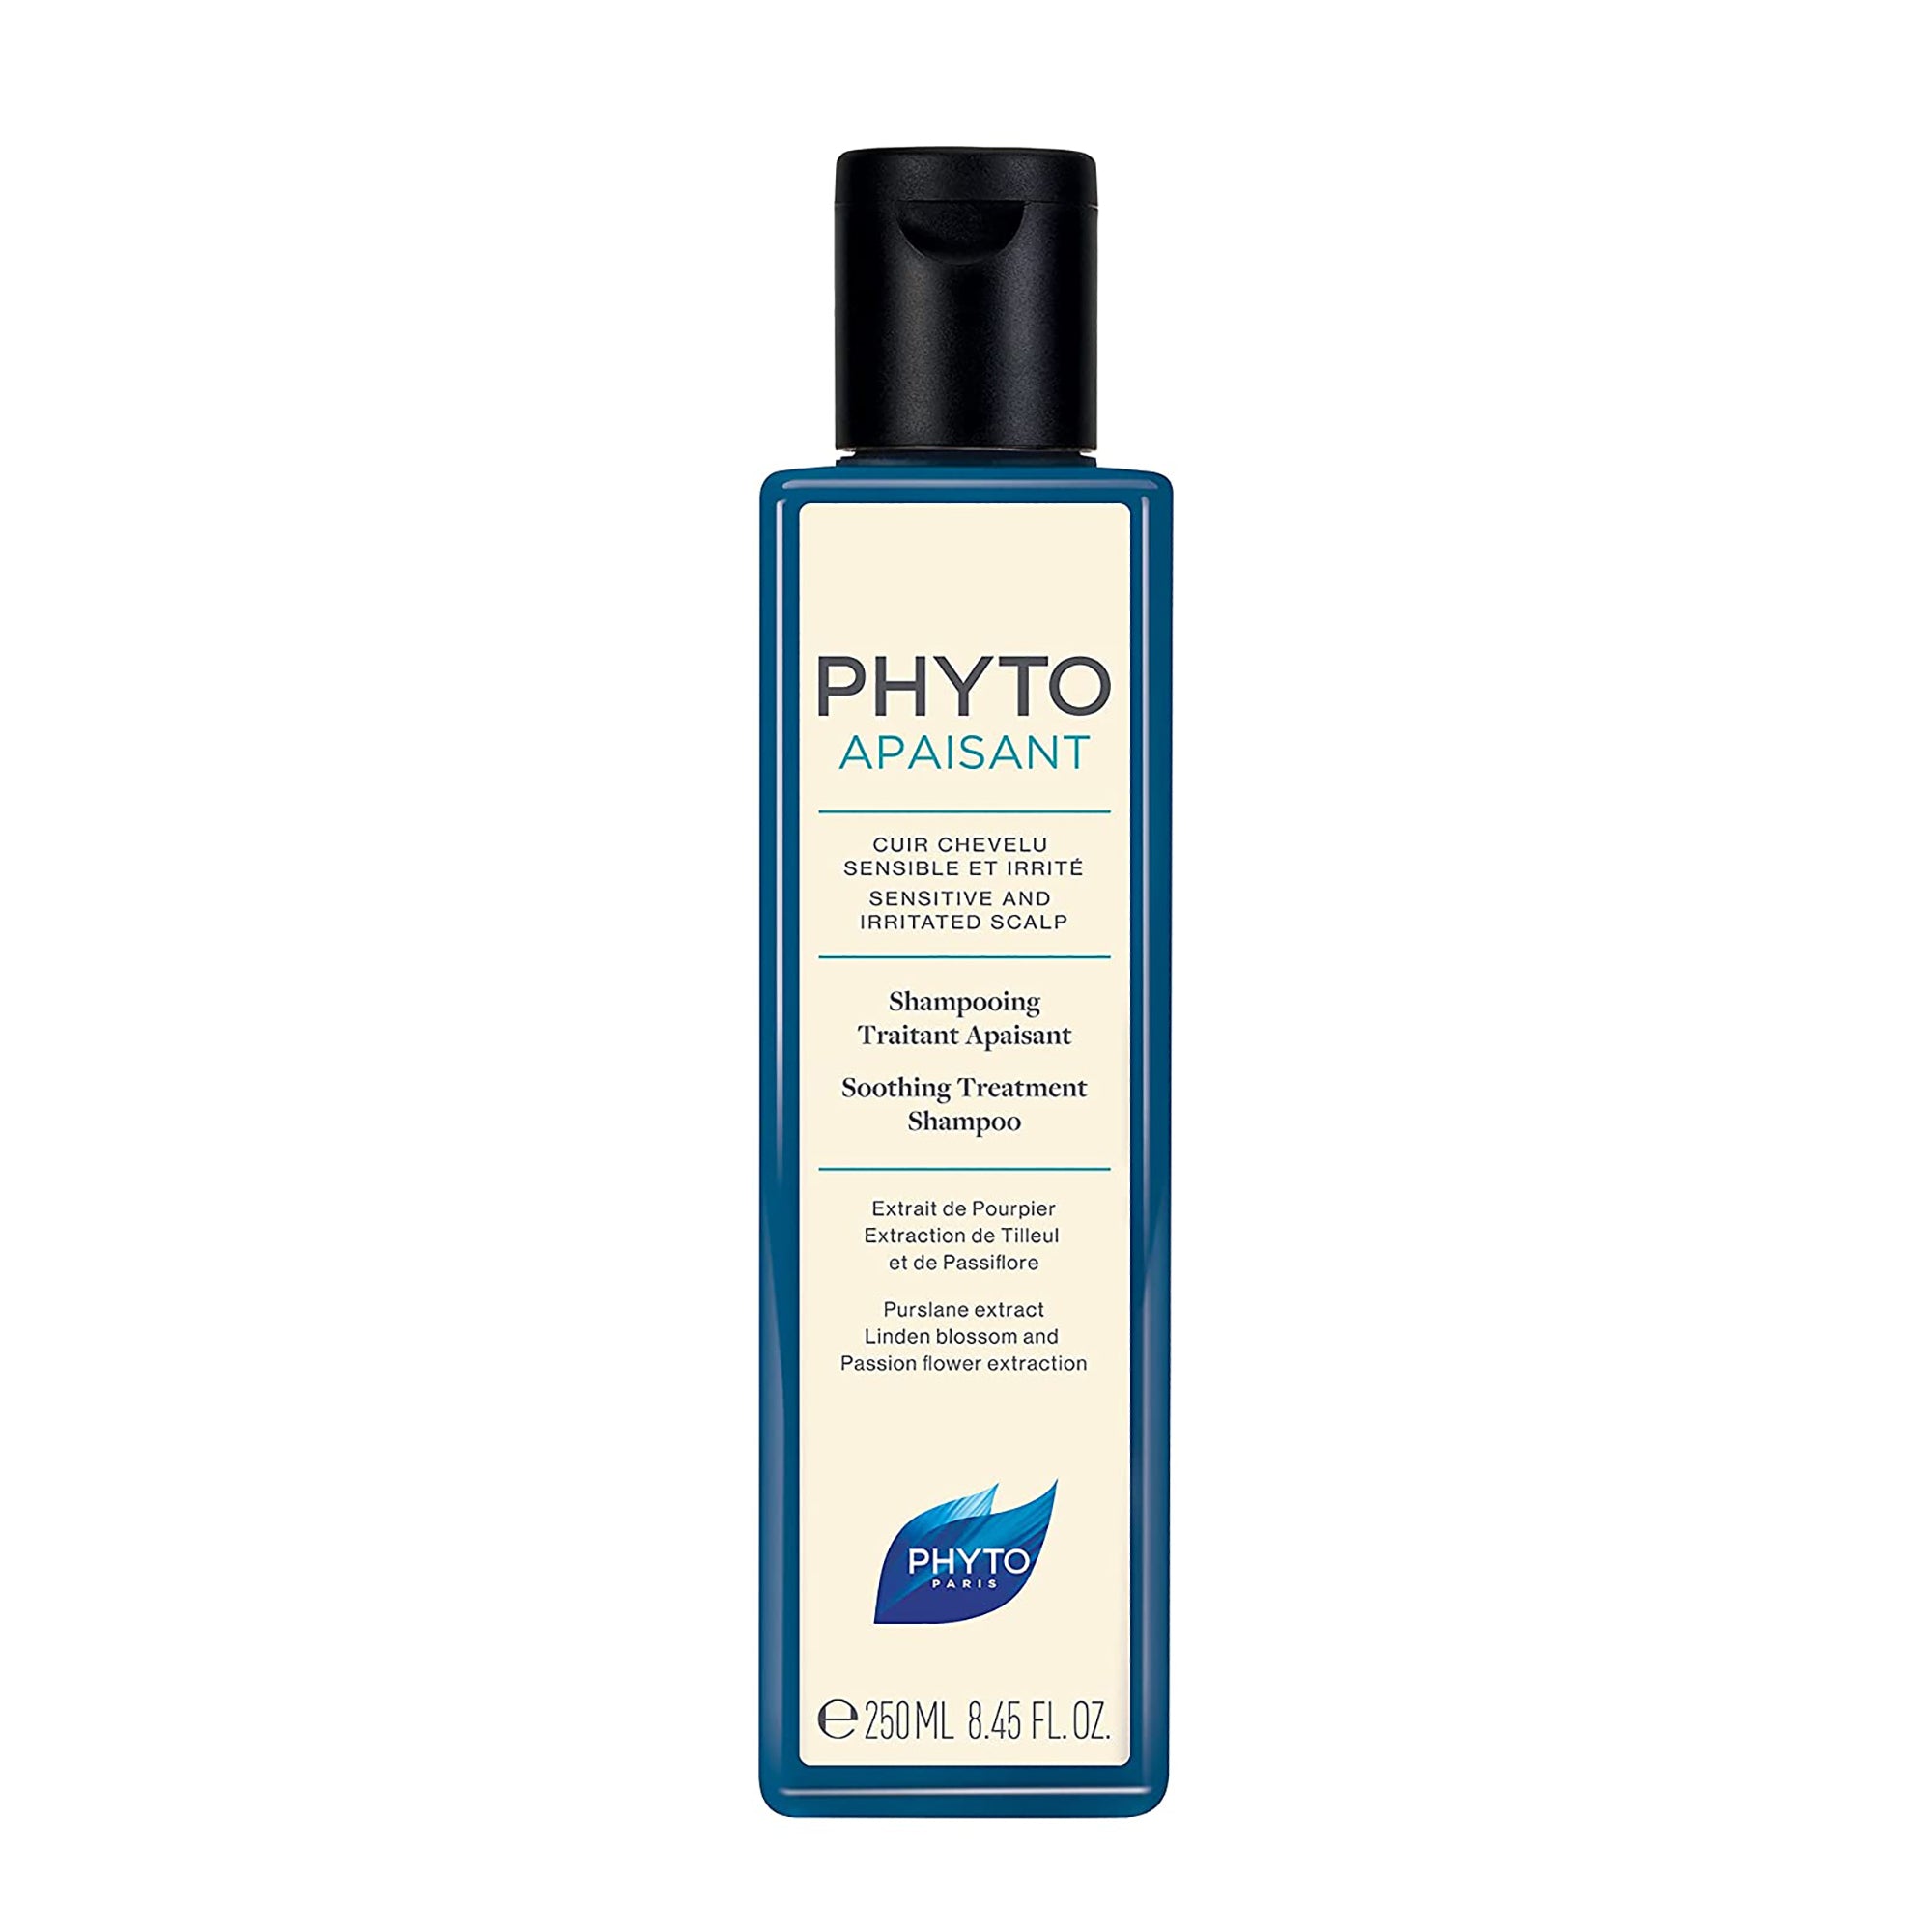 Phyto Phytoapaisant Soothing Treatment Shampoo / 8.45OZ